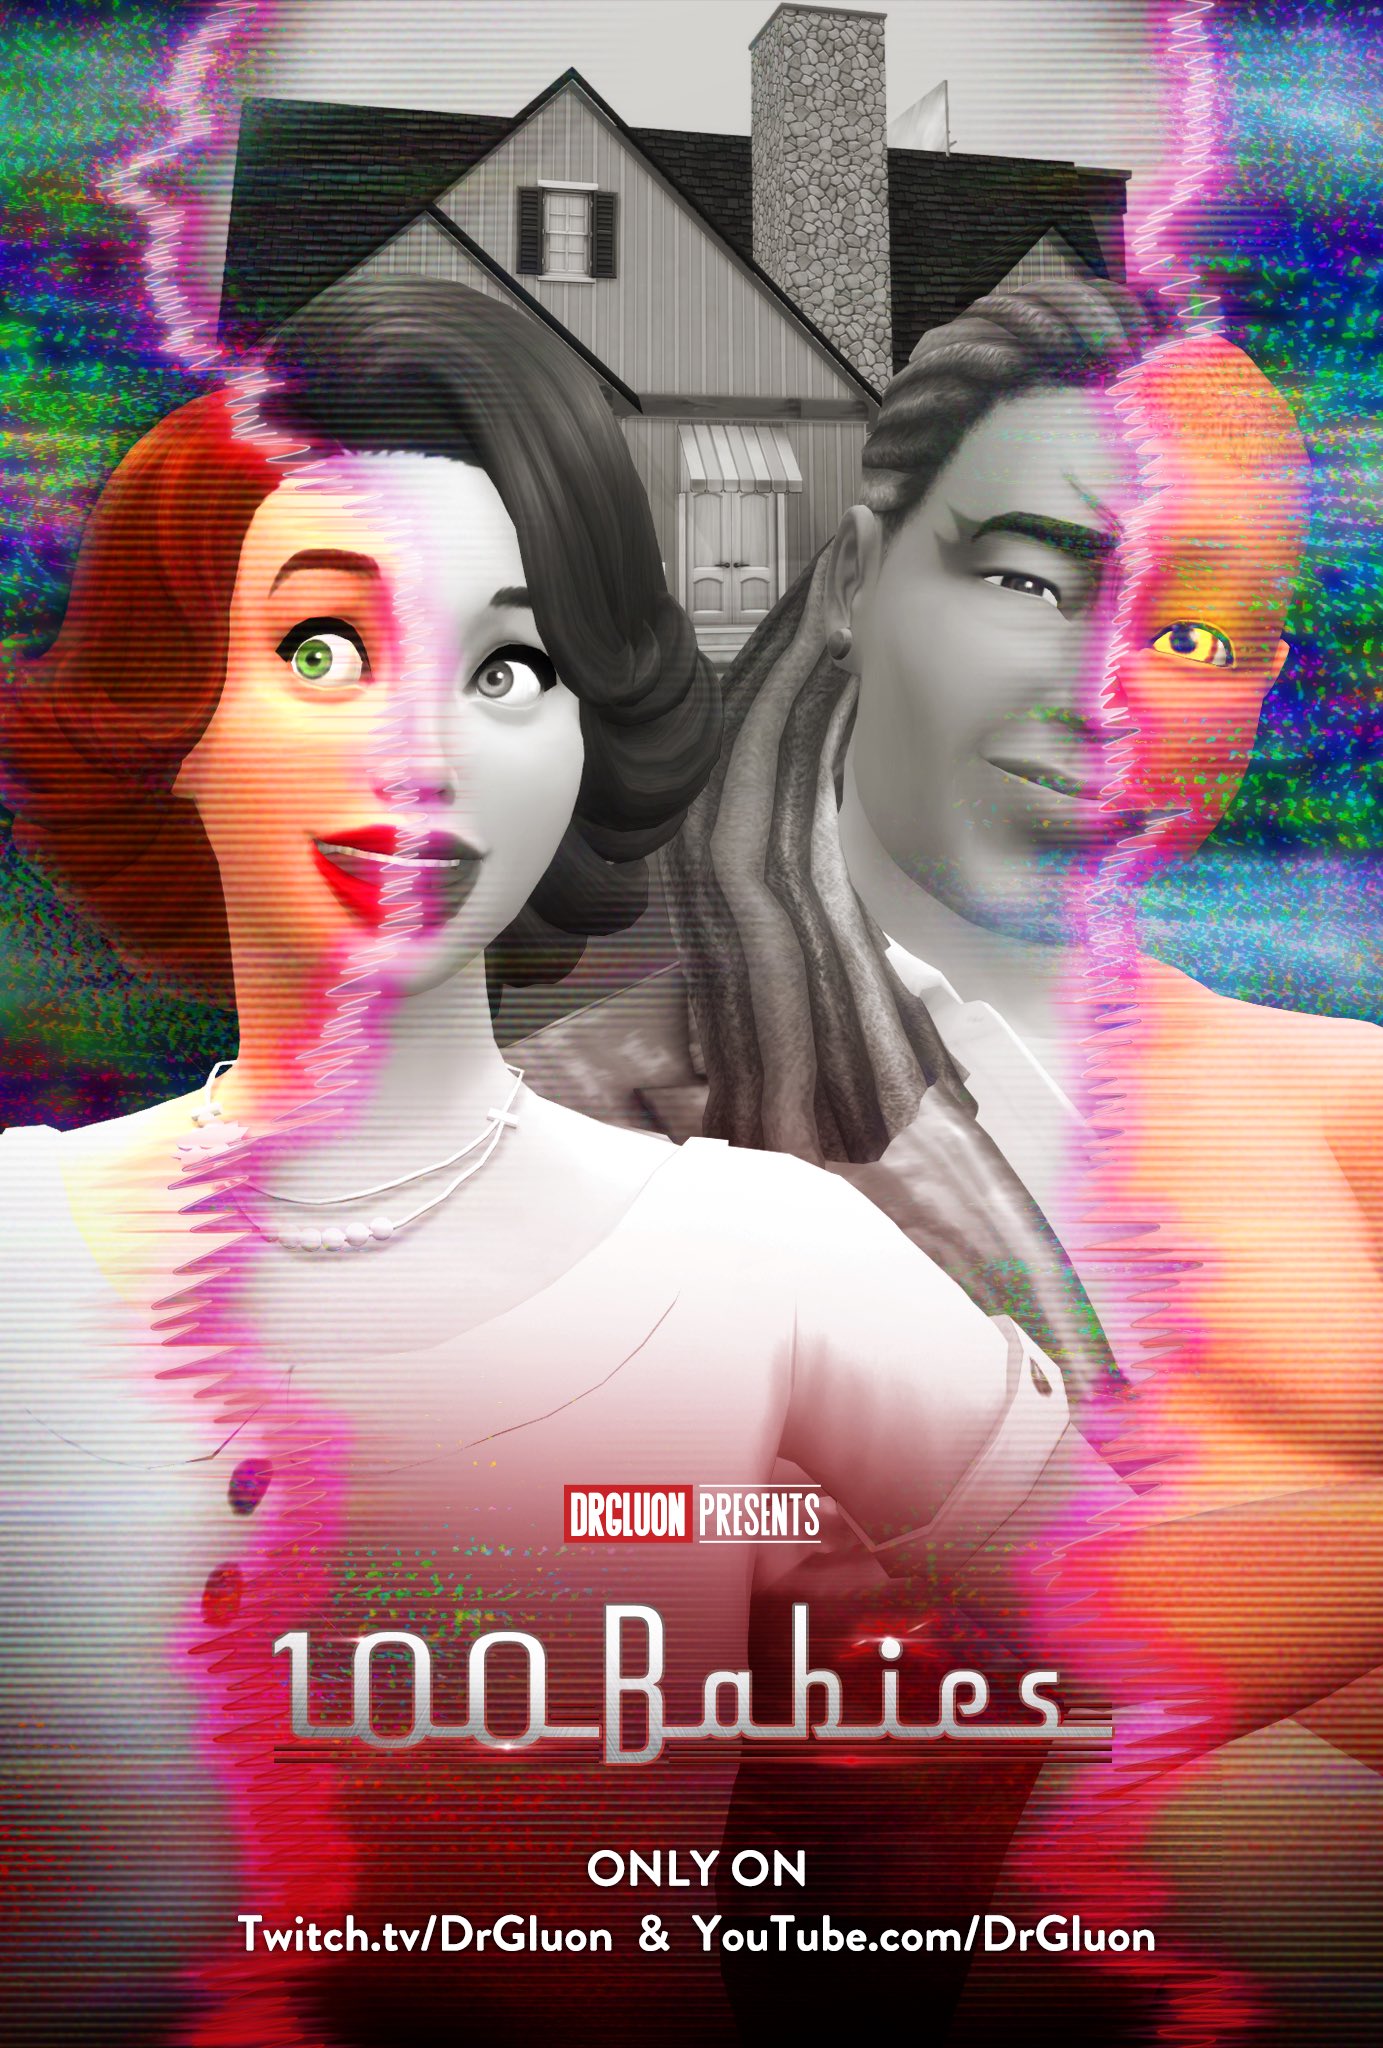 Pochette "100 Babies" avec personnages stylisés.